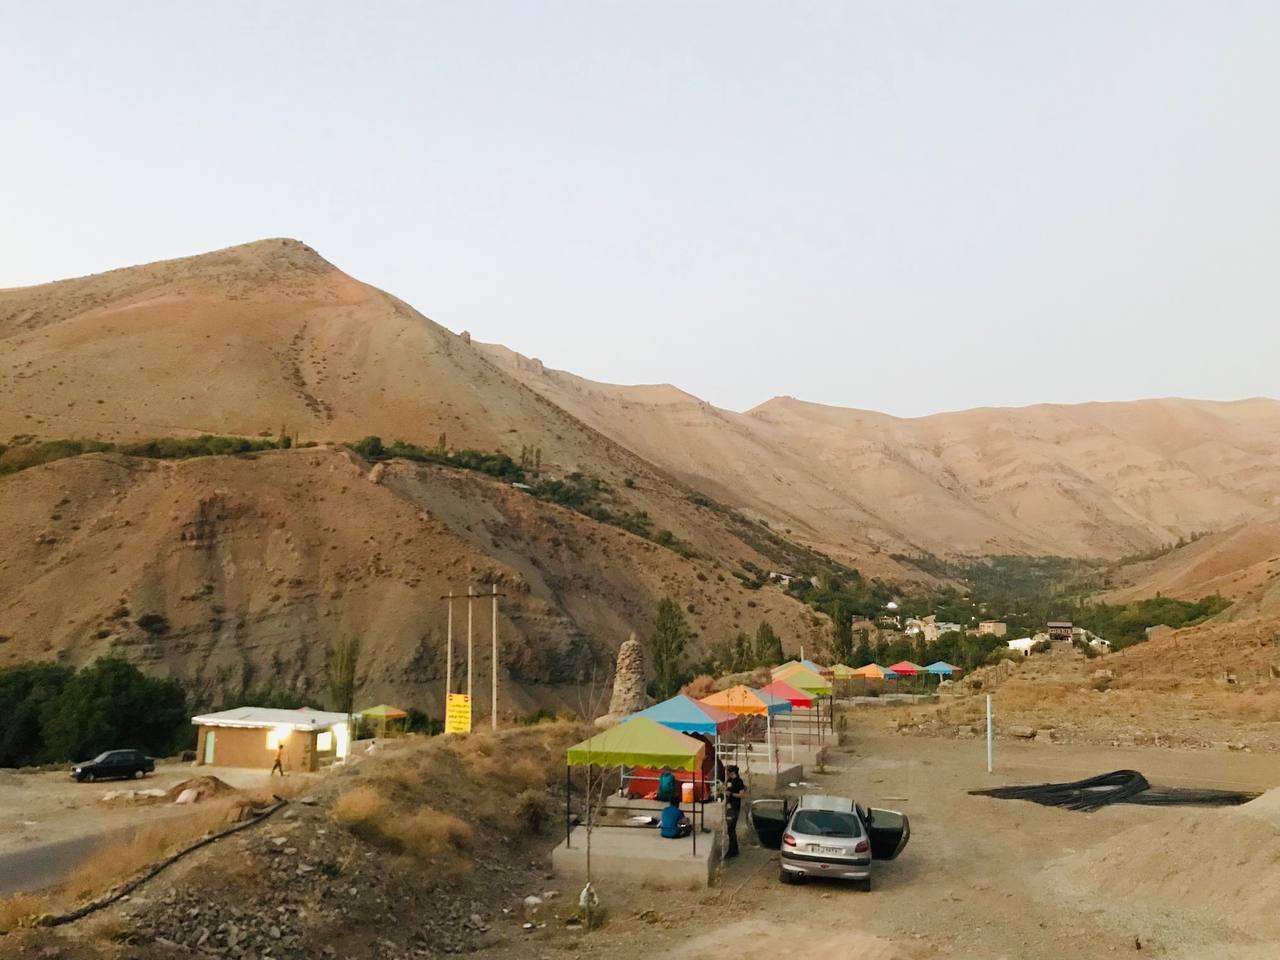 روستای مورود, Mowrud Village